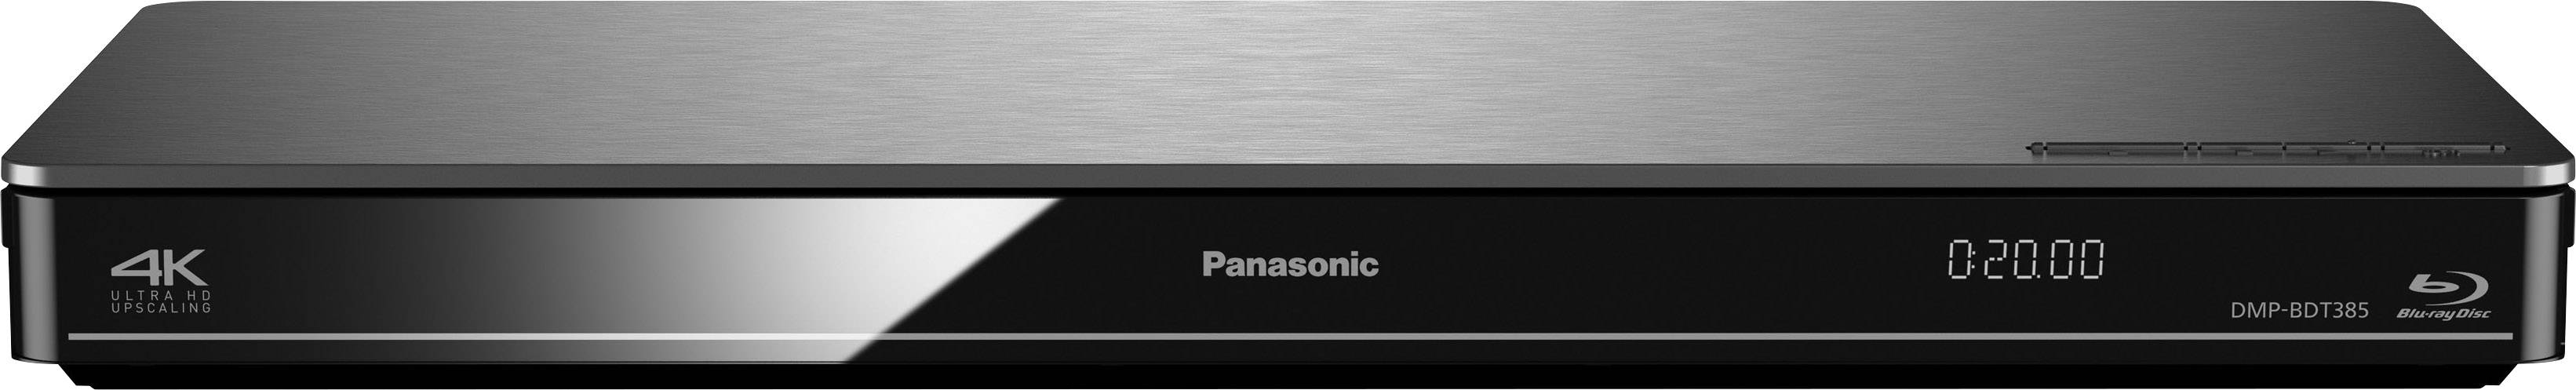 Lecteur Blu-ray 3D Panasonic DMP-BDT385 Wi-Fi argent - Conrad